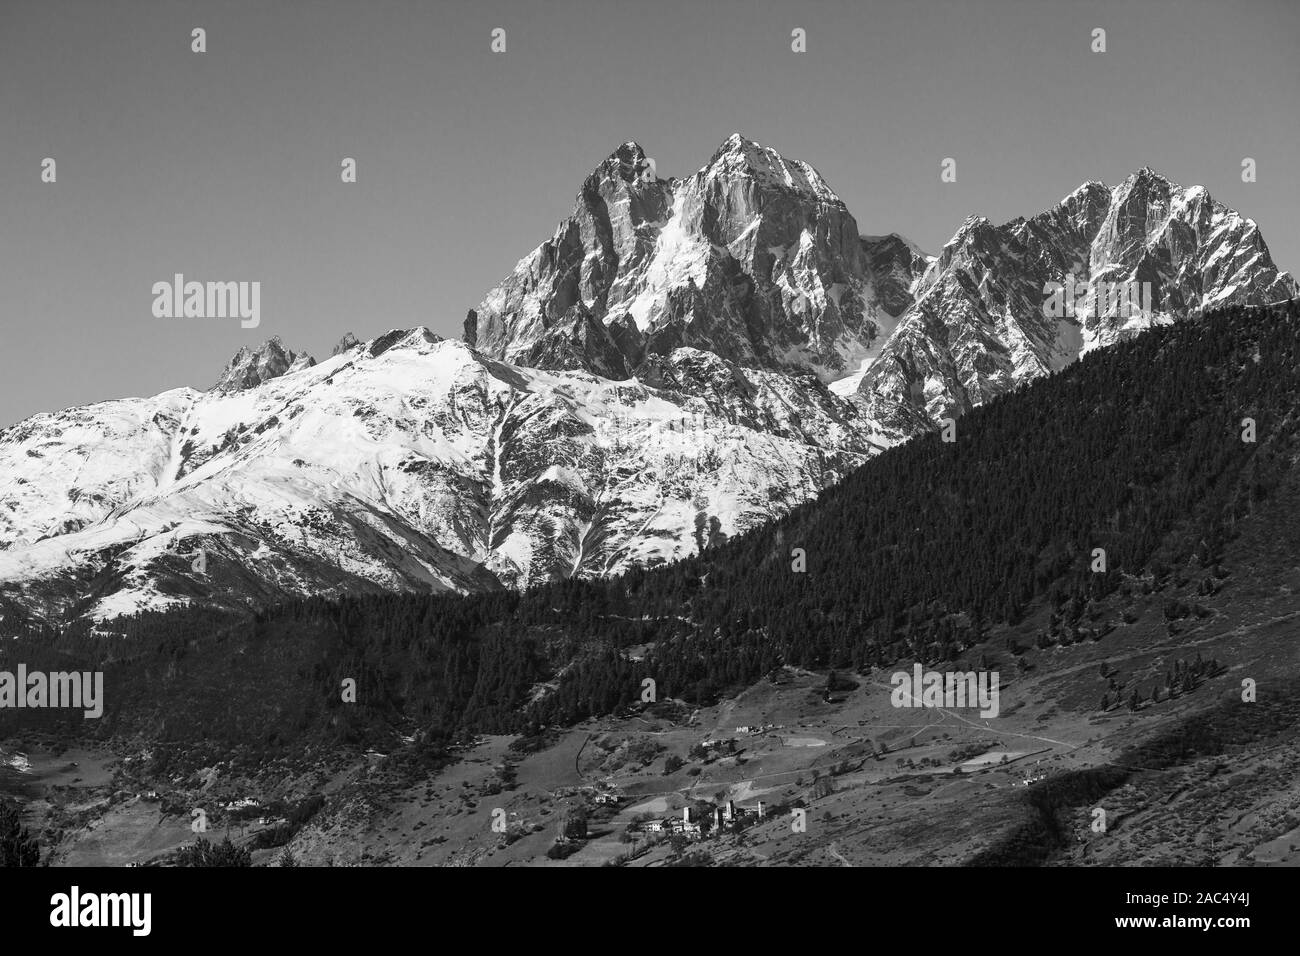 Berglandschaft Panorama. Majestätische Gipfel mit Schnee bedeckt. Schwarze und weiße dramatisches Bild Stockfoto